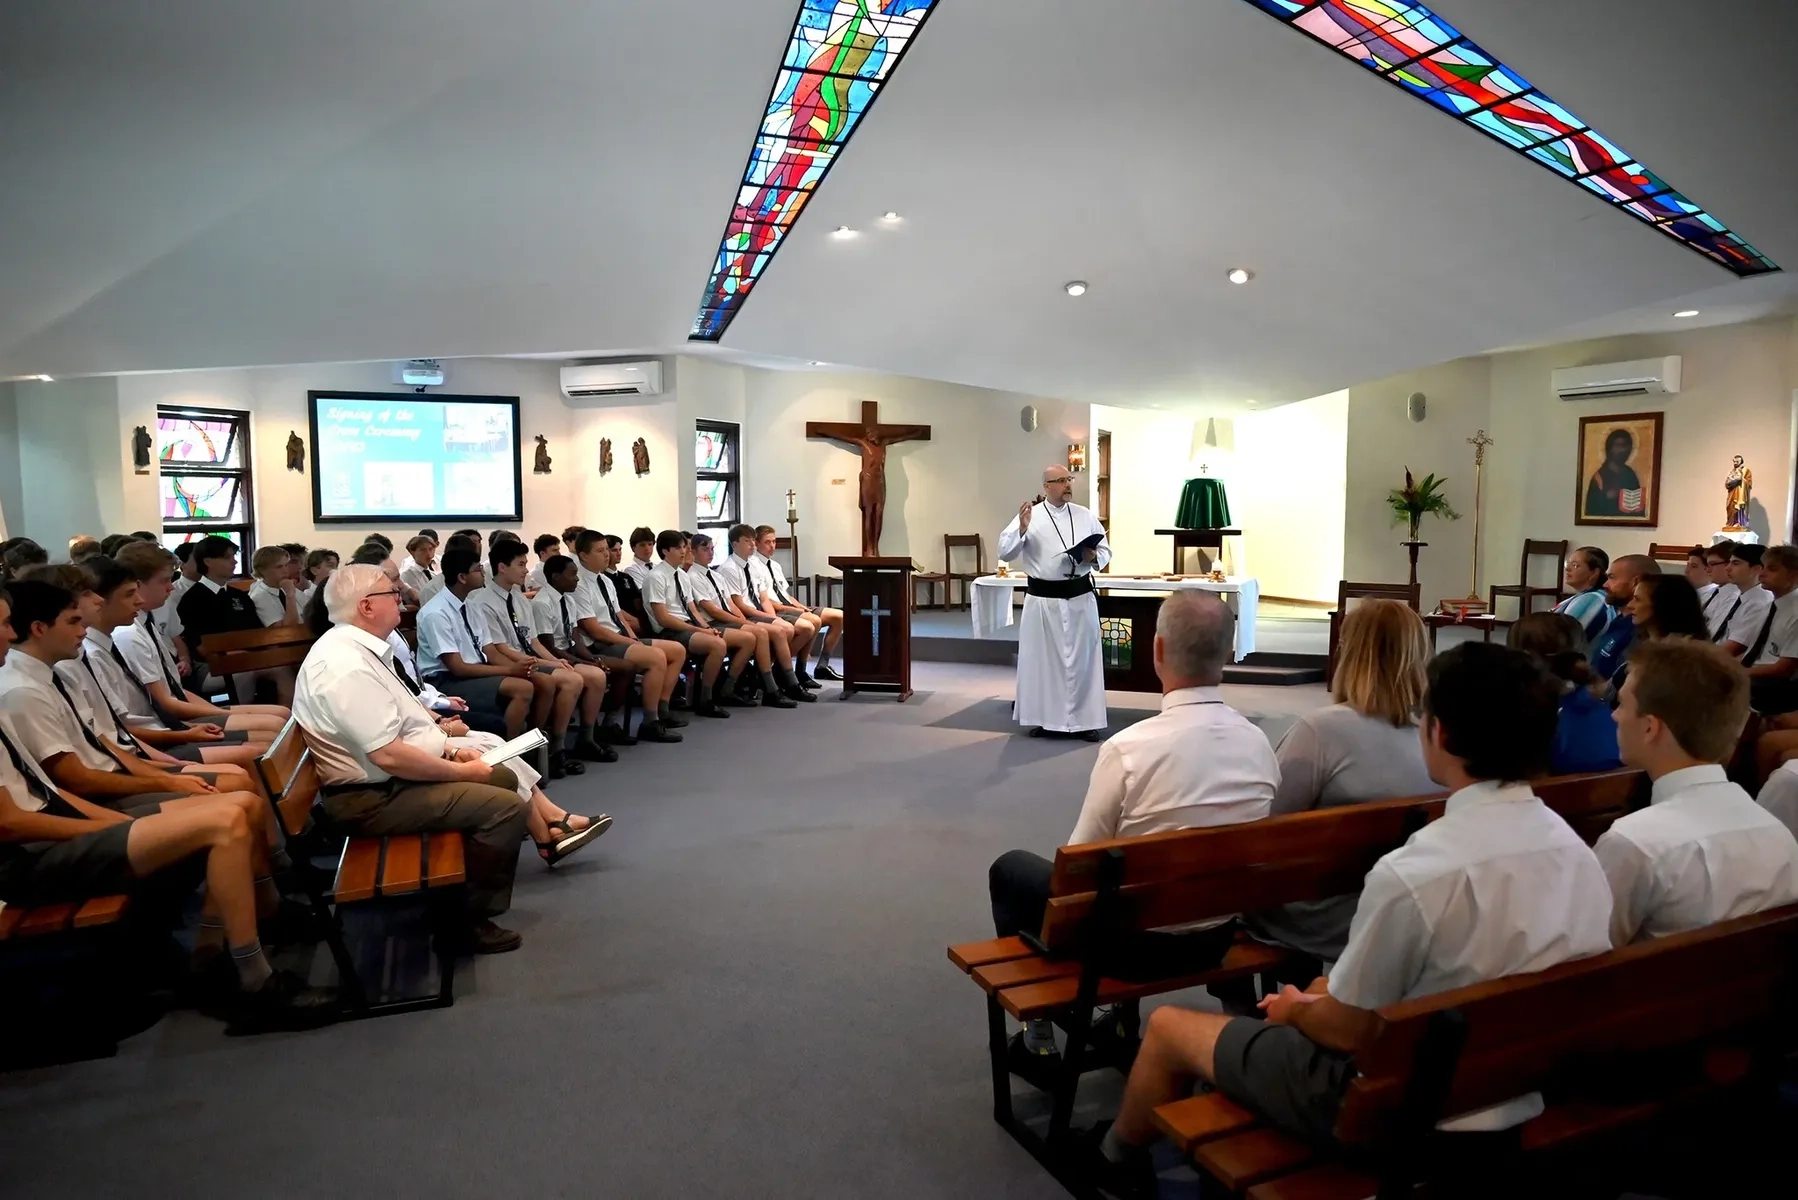 Father Fini OMI presenting Mass to students in the Chapel at Mazenod College Perth WA